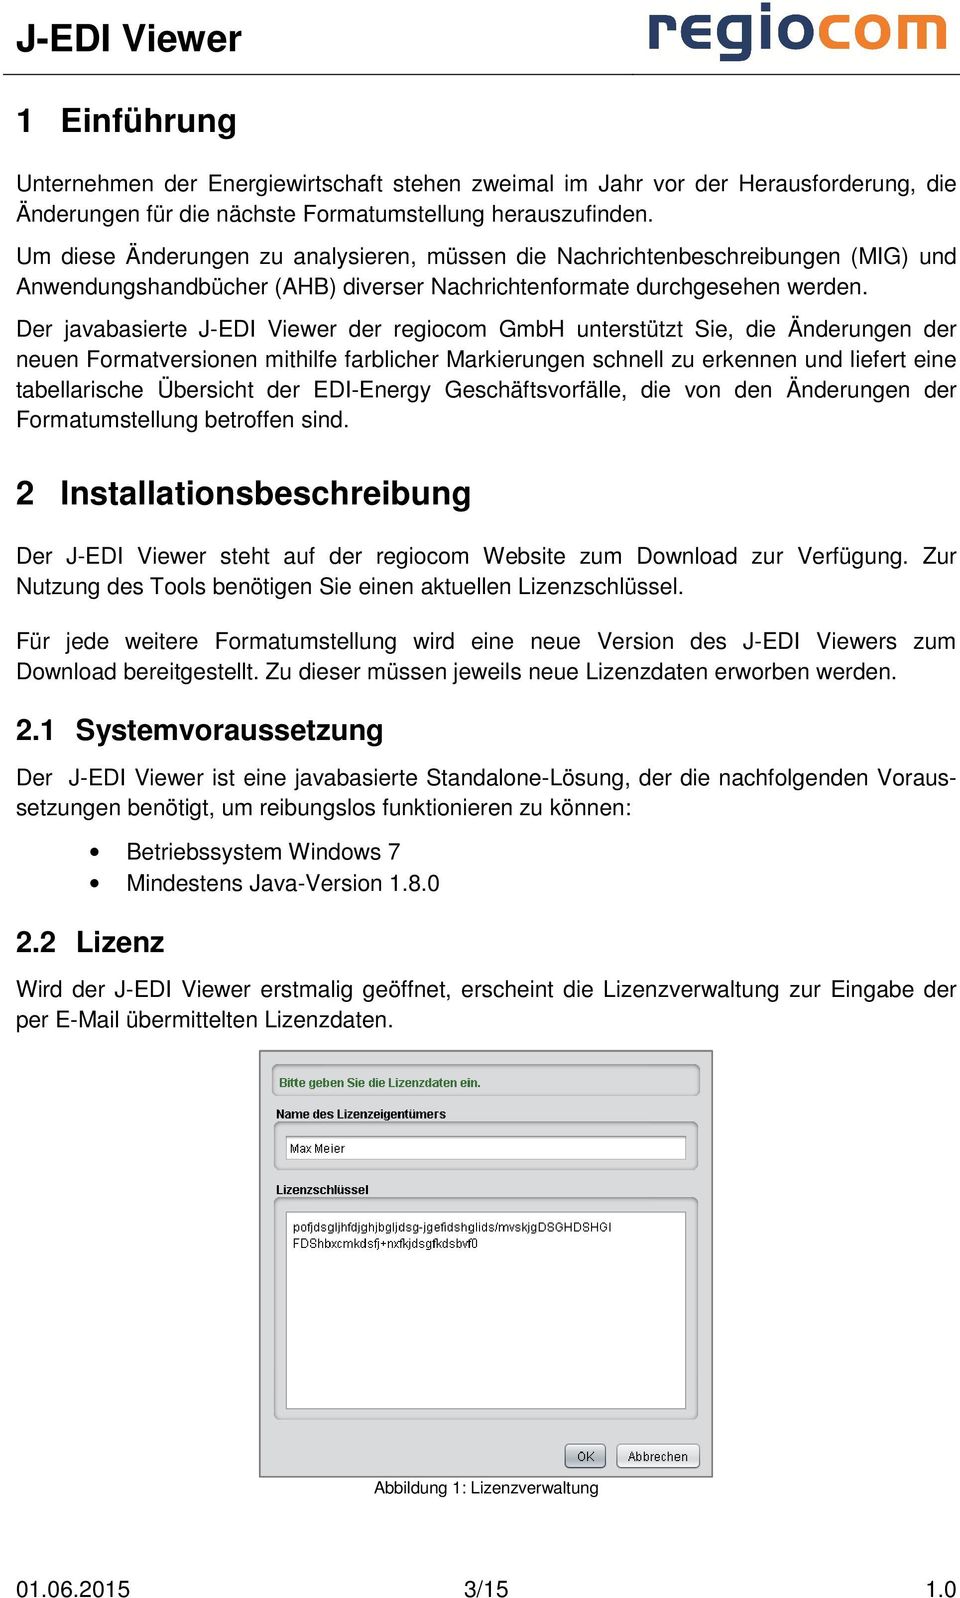 Der javabasierte J-EDI Viewer der regiocom GmbH unterstützt Sie, die Änderungen der neuen Formatversionen mithilfe farblicher Markierungen schnell zu erkennen und liefert eine tabellarische Übersicht